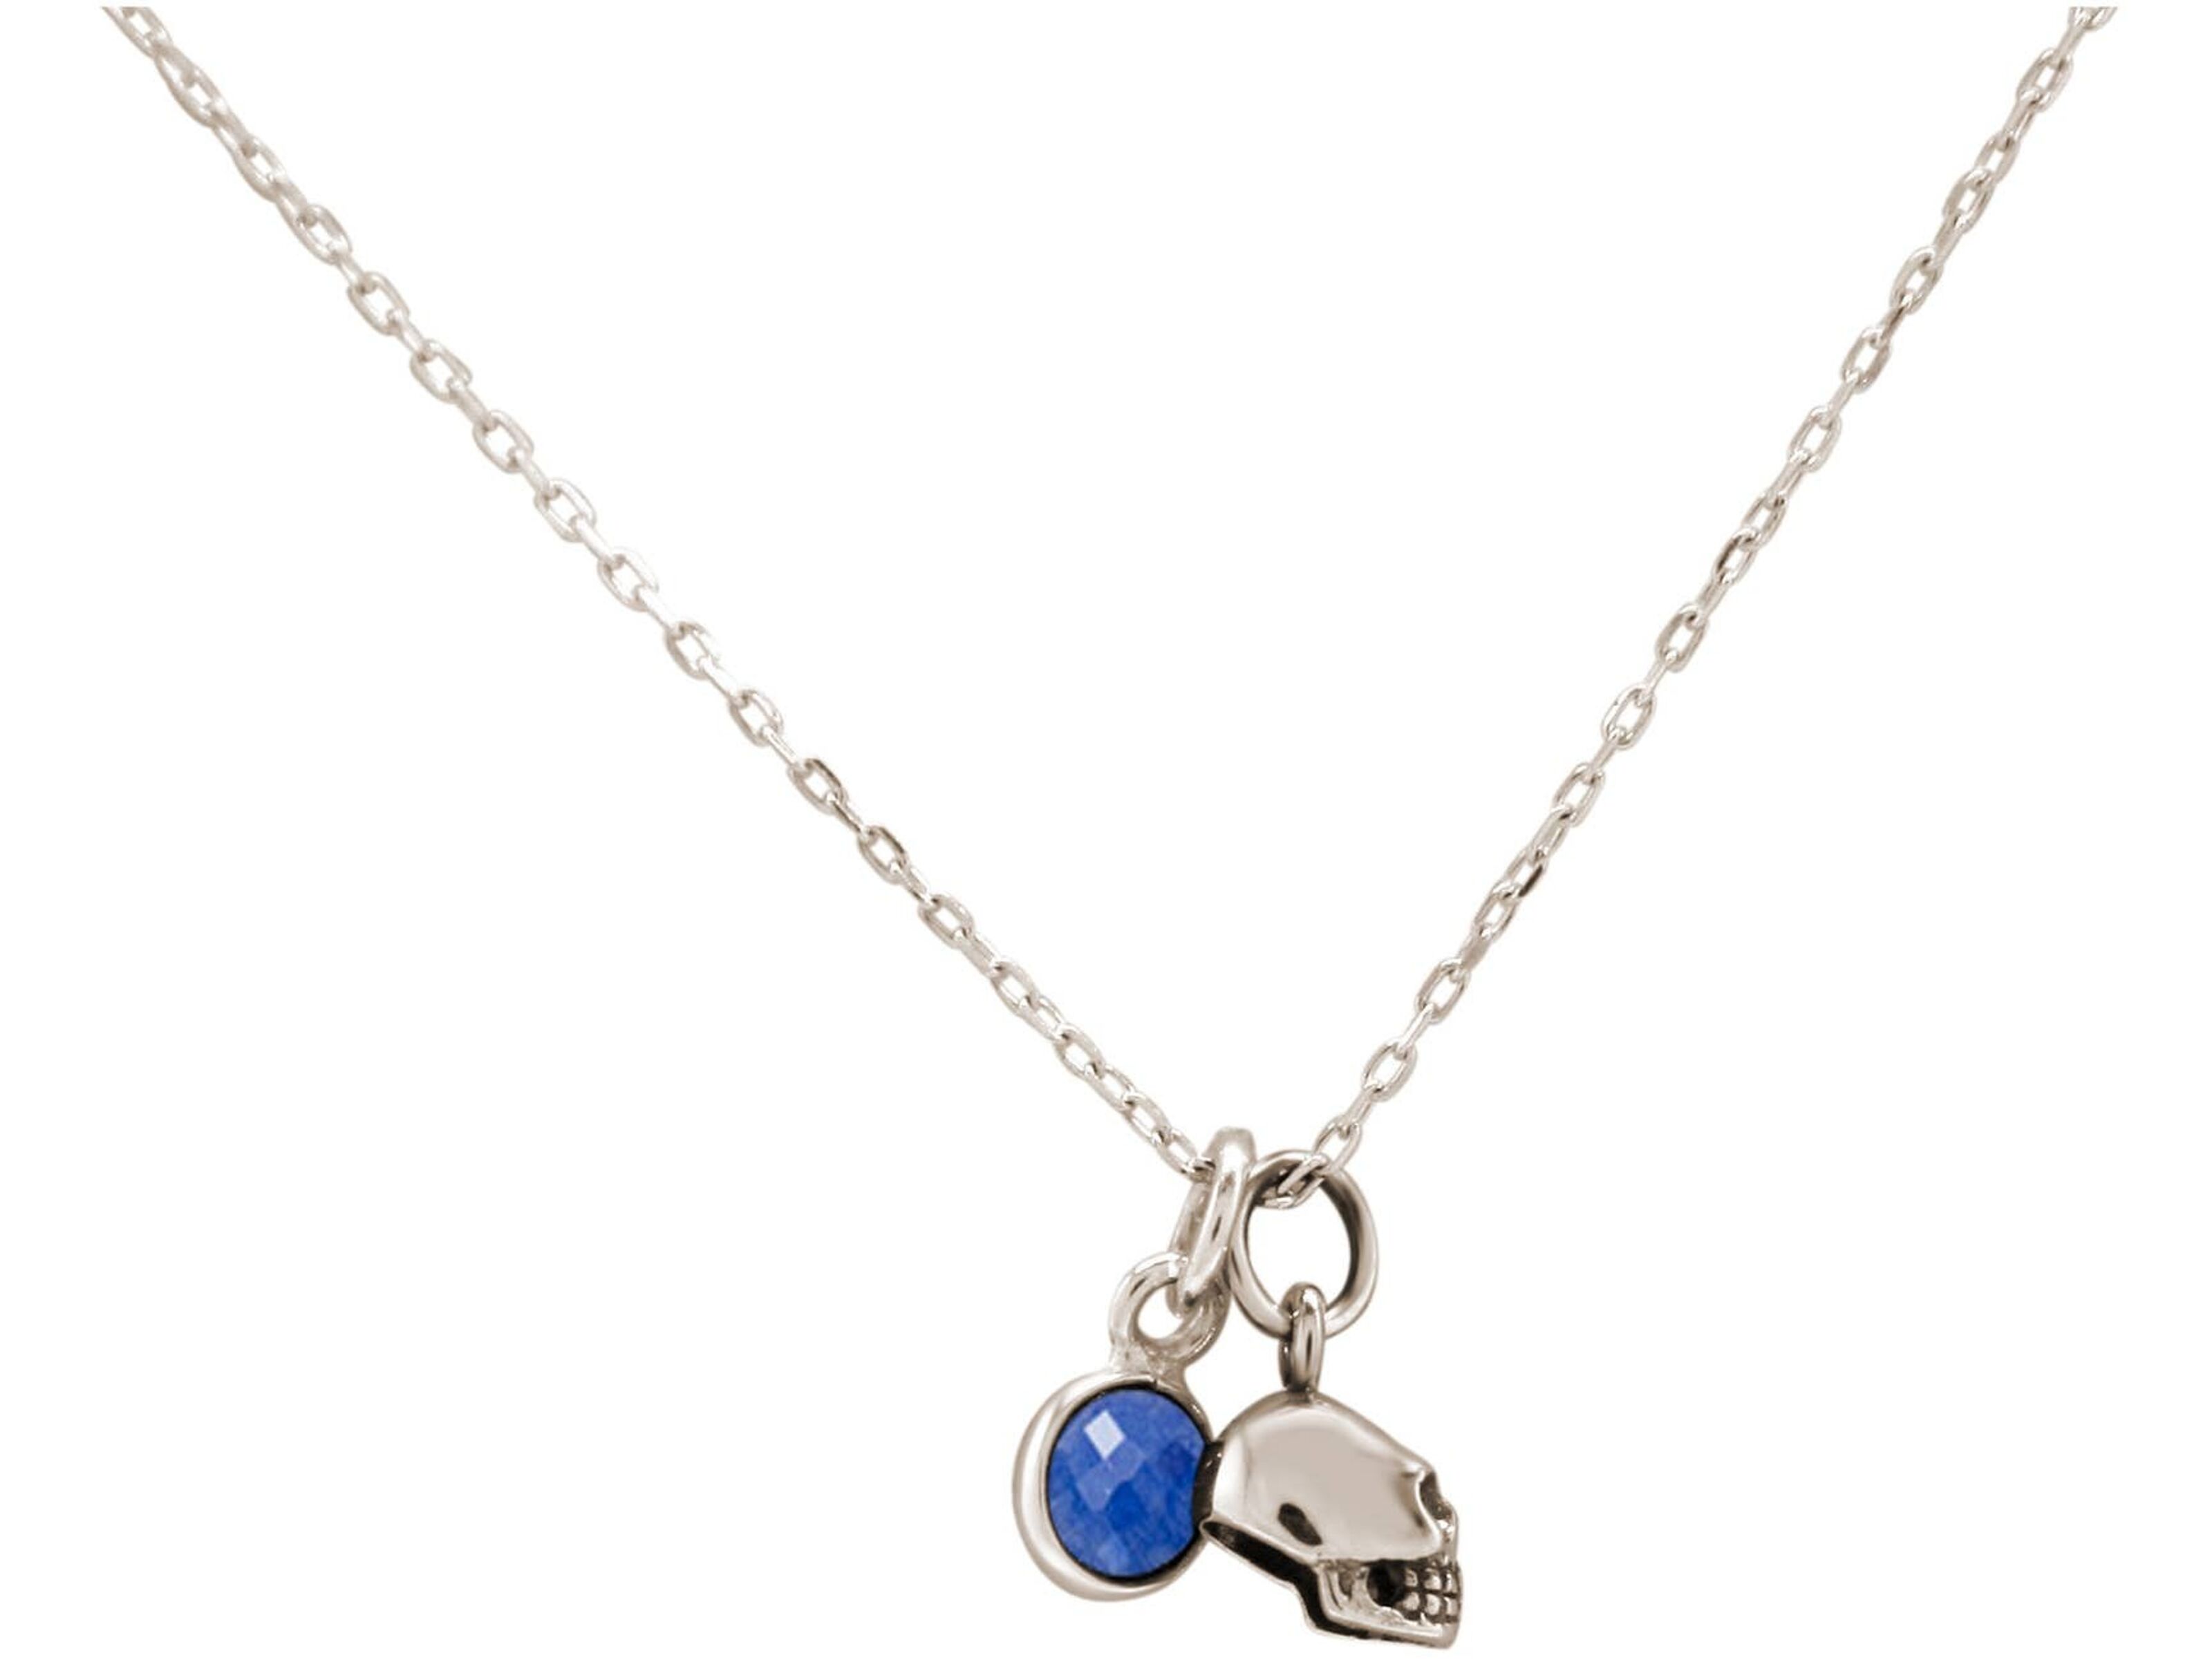 Buy wholesale Gemshine Necklace - Gothic Skull Pendant